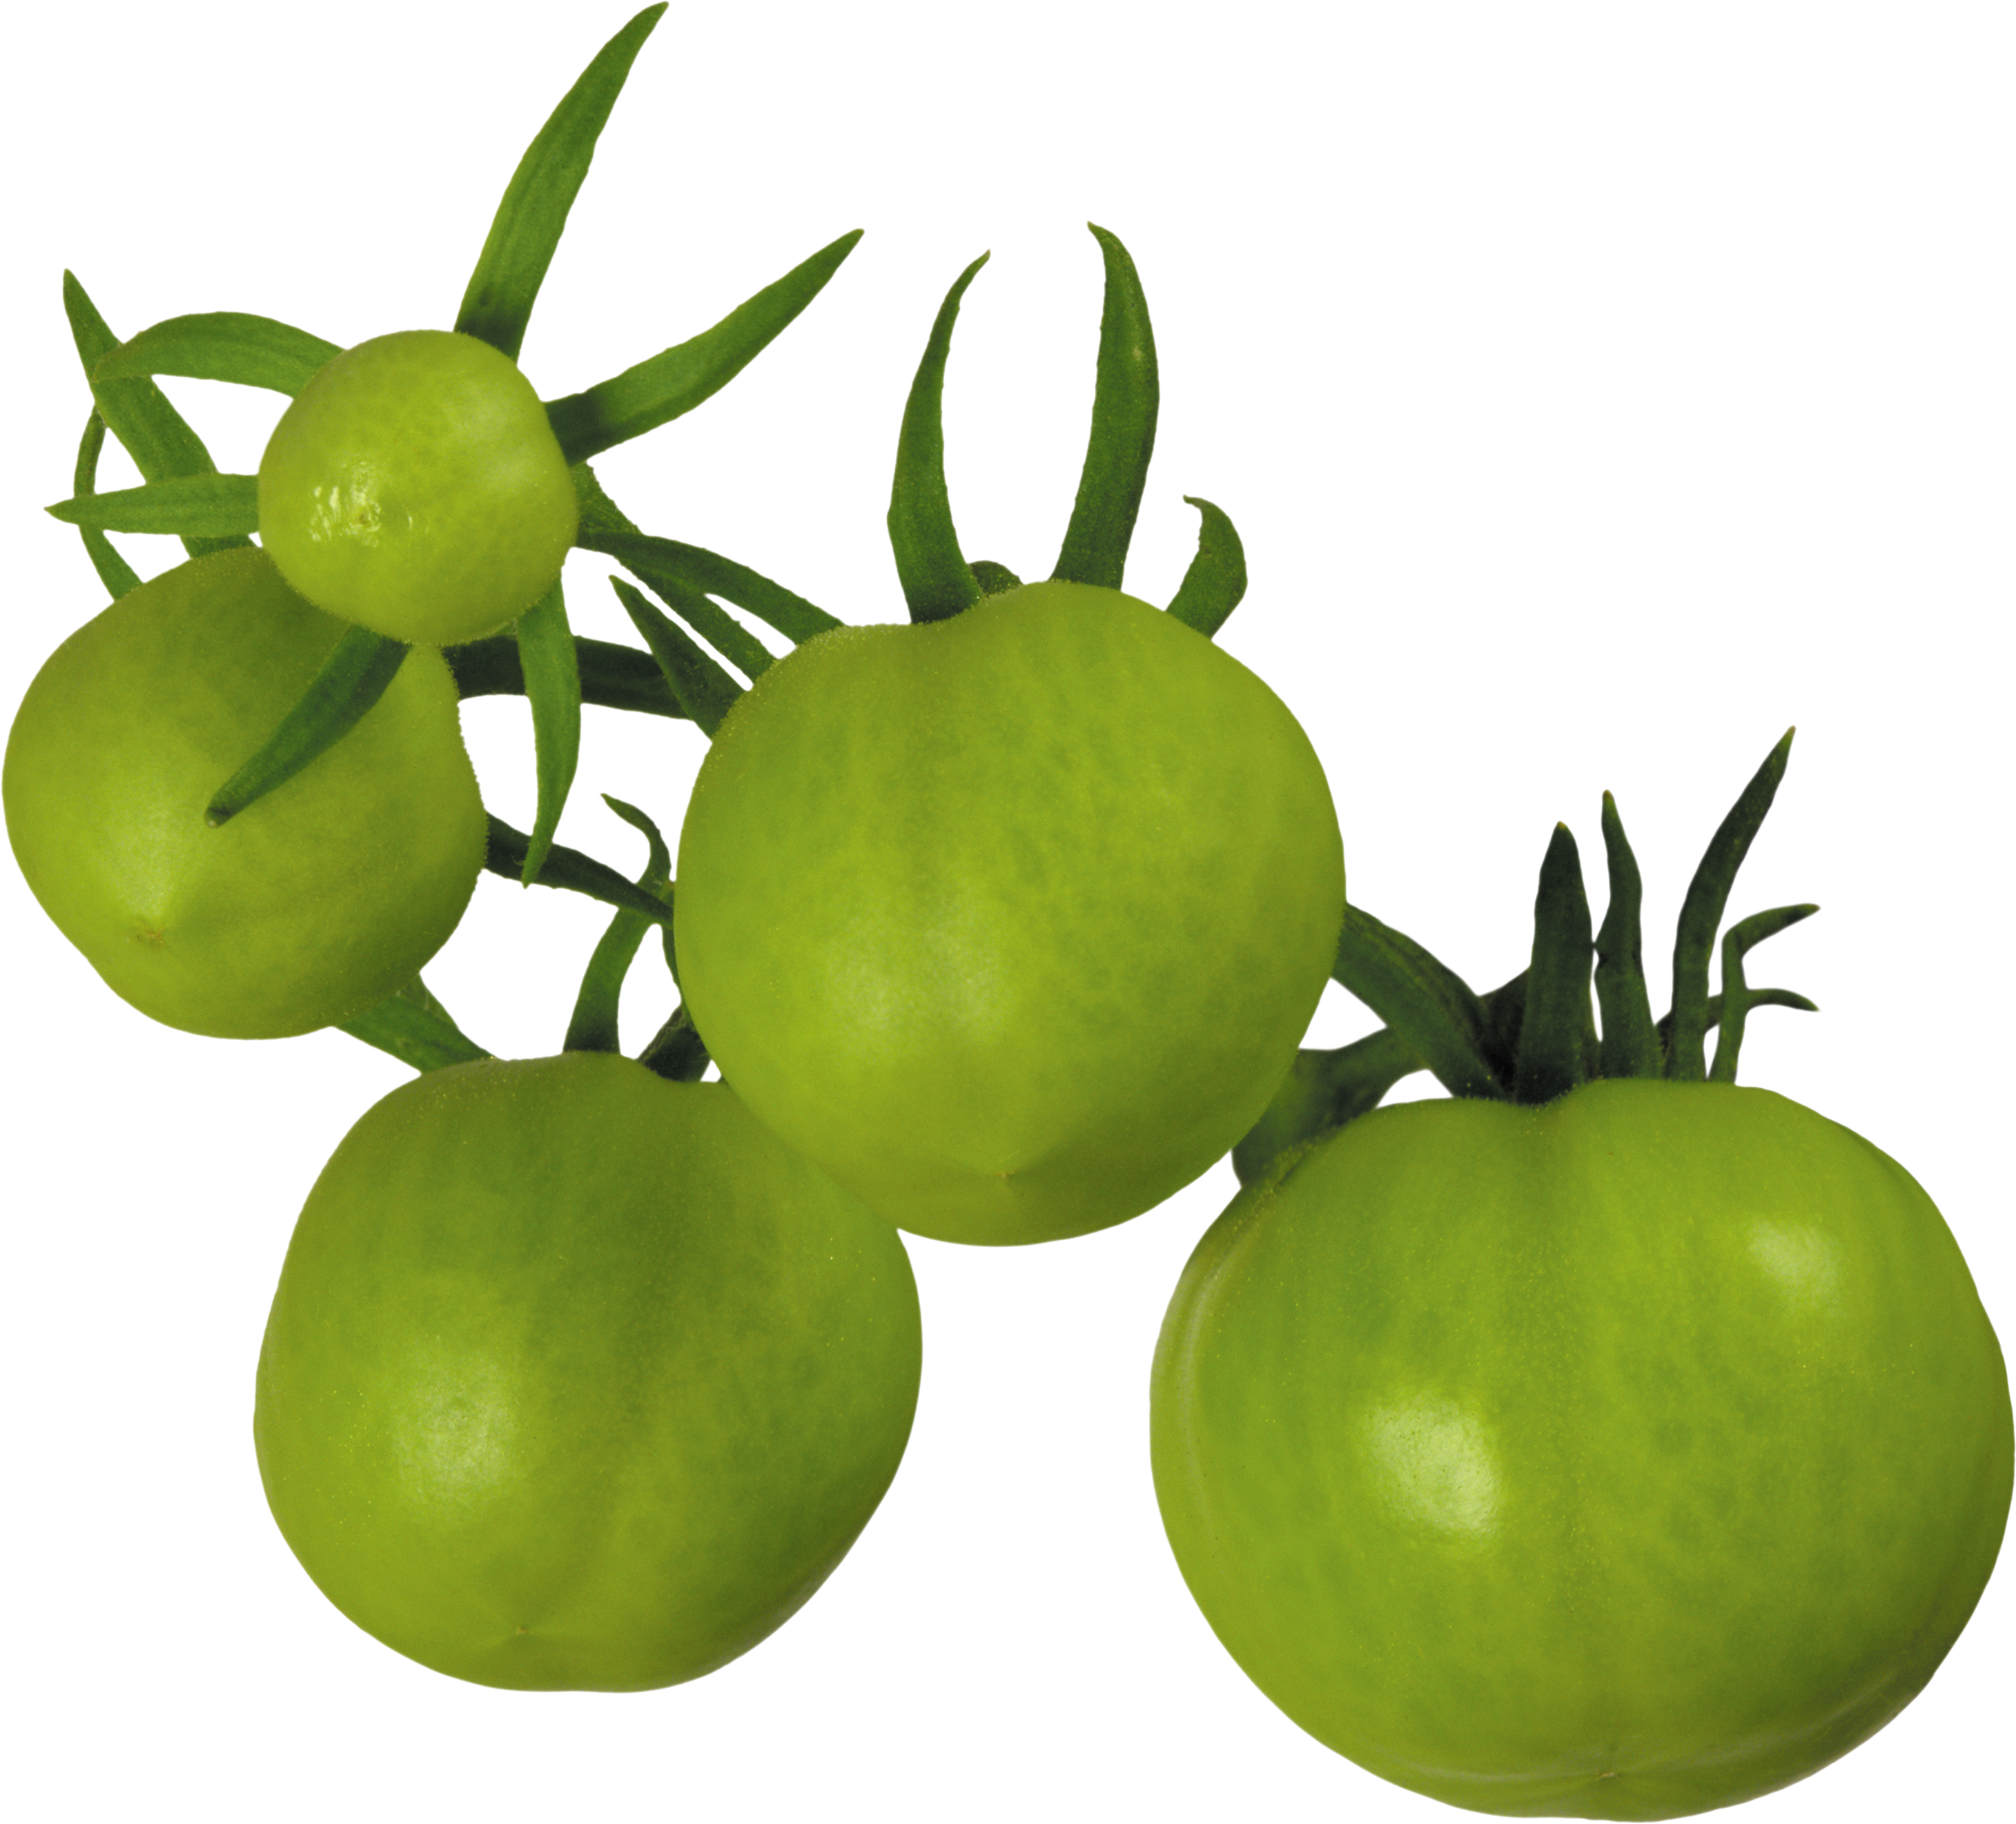 녹색 토마토 몇 개